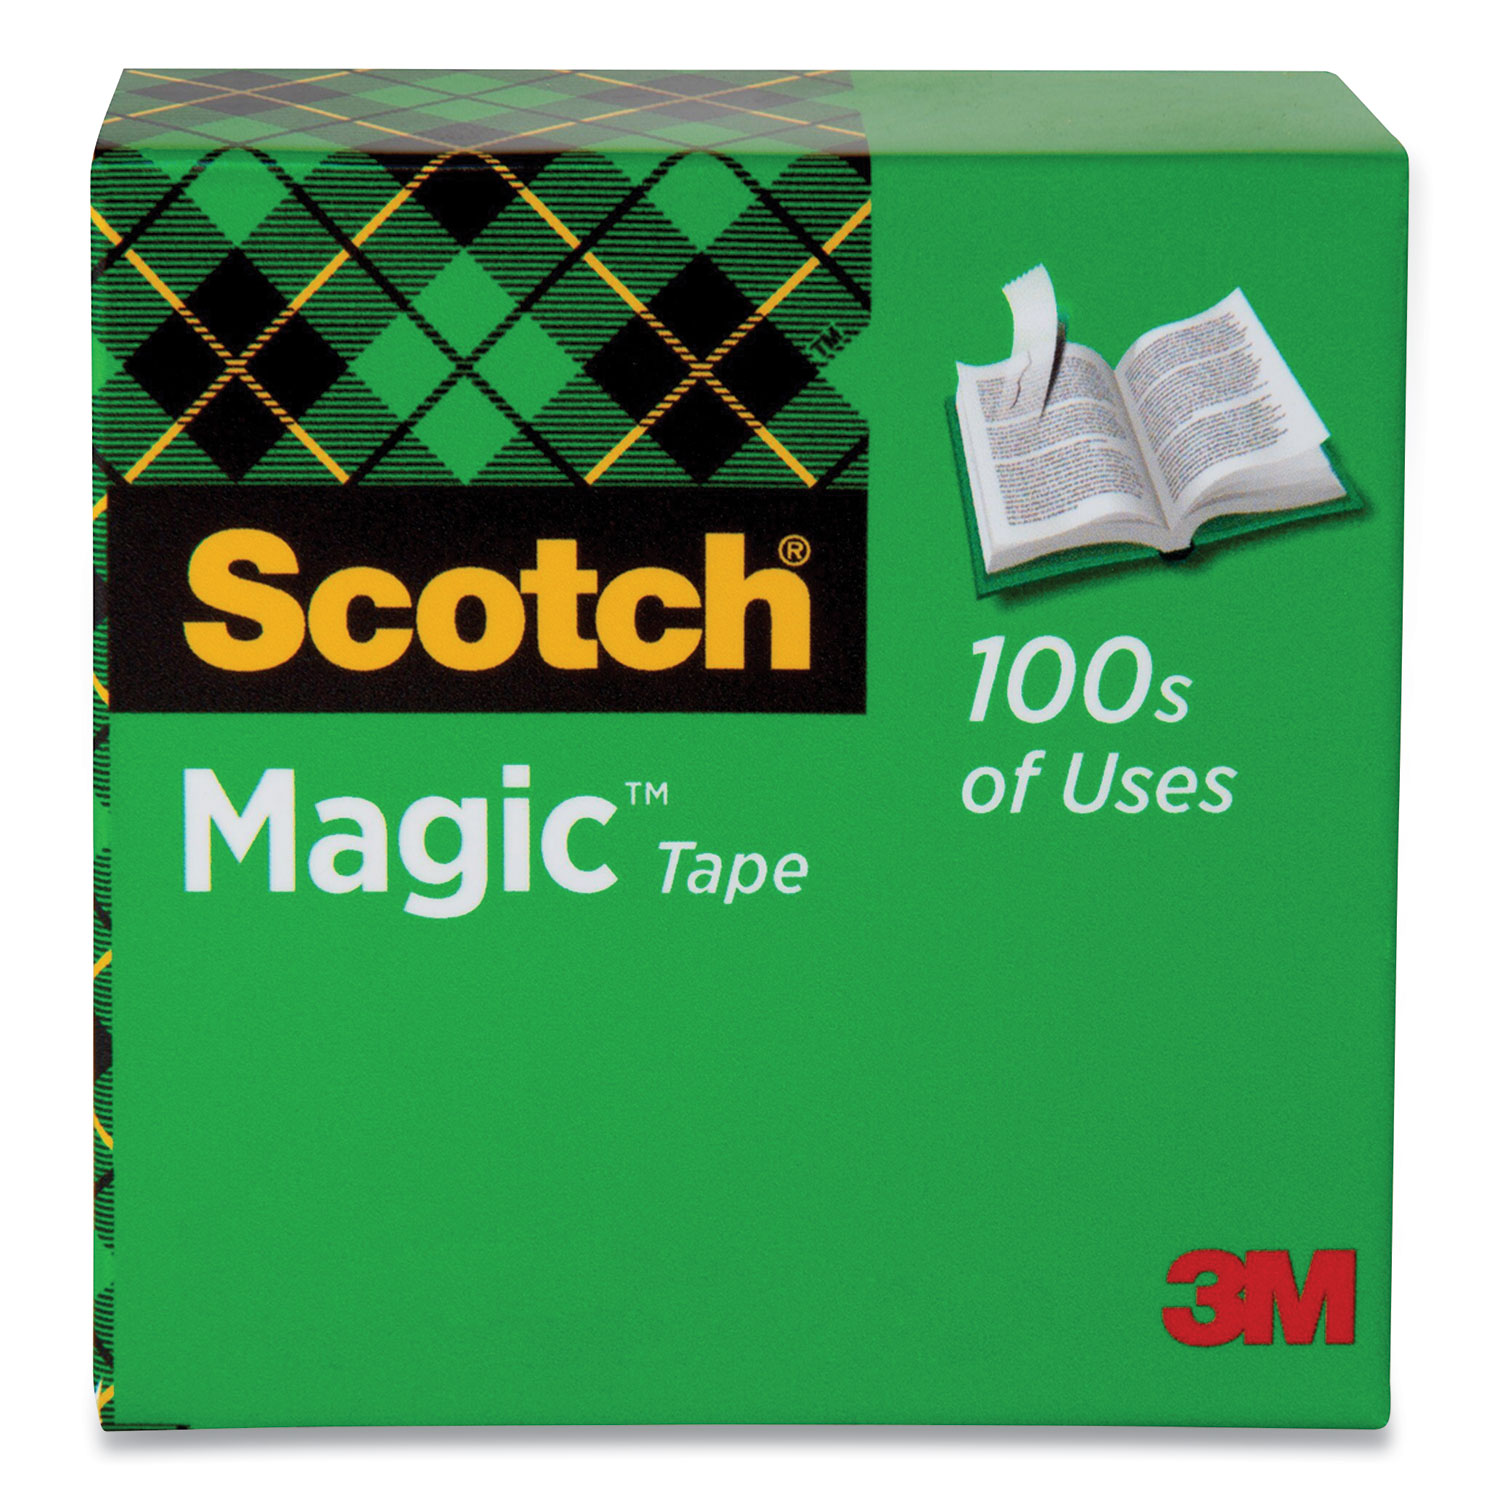 Scotch Magic Invisible Tape Refill Roll - 0.75 x 500